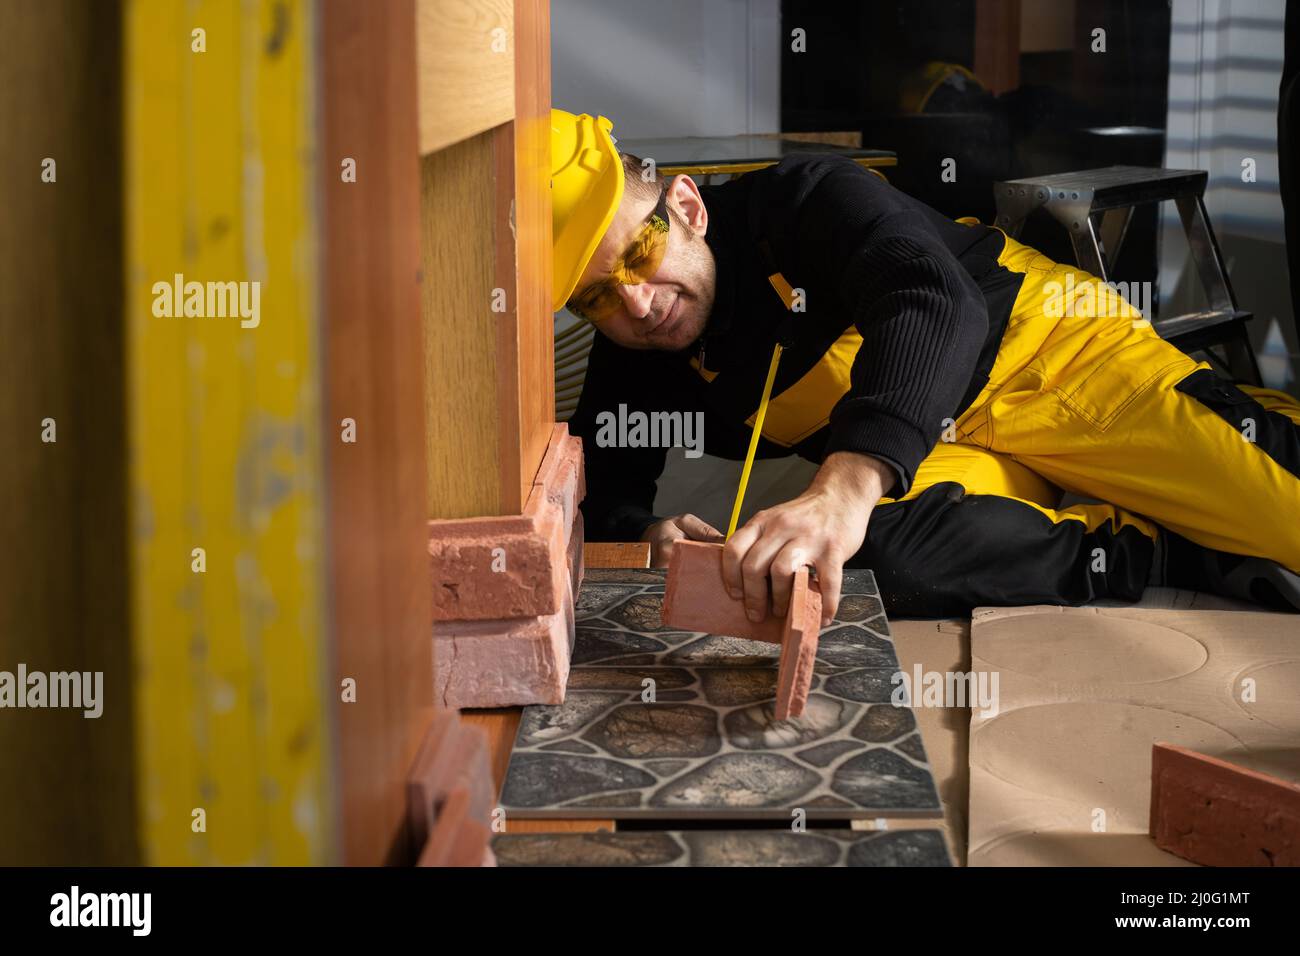 Le travailleur de la construction vérifie à l'œil si la brique décorative s'adapte à l'endroit prévu. Travailleur de la construction portant des perso Banque D'Images